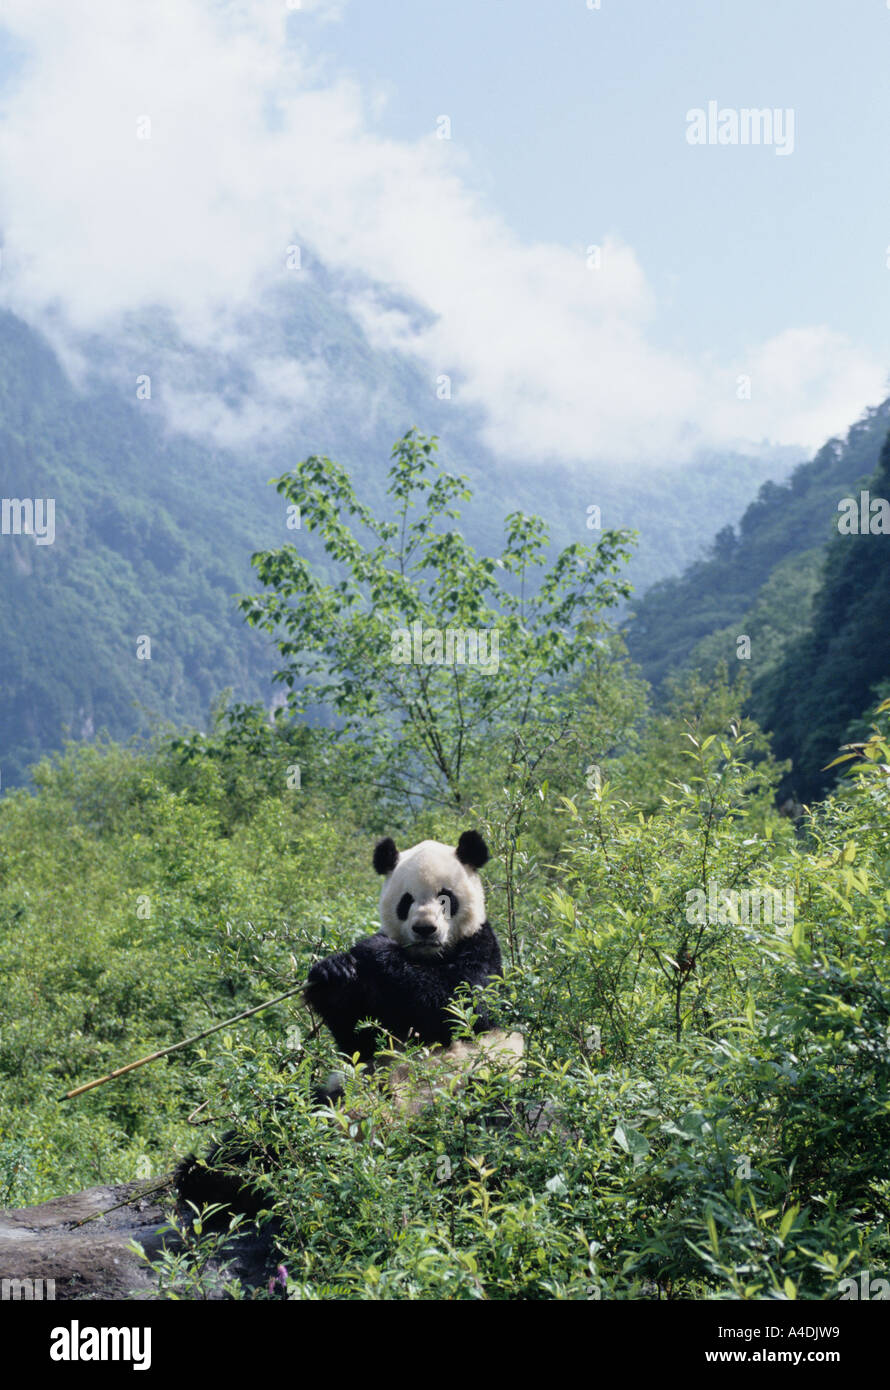 Le panda géant, Ailuropoda melanoleuca, se nourrissant de bambou dans l'habitat de montagne, Daliang, Sichuan, Chine Banque D'Images